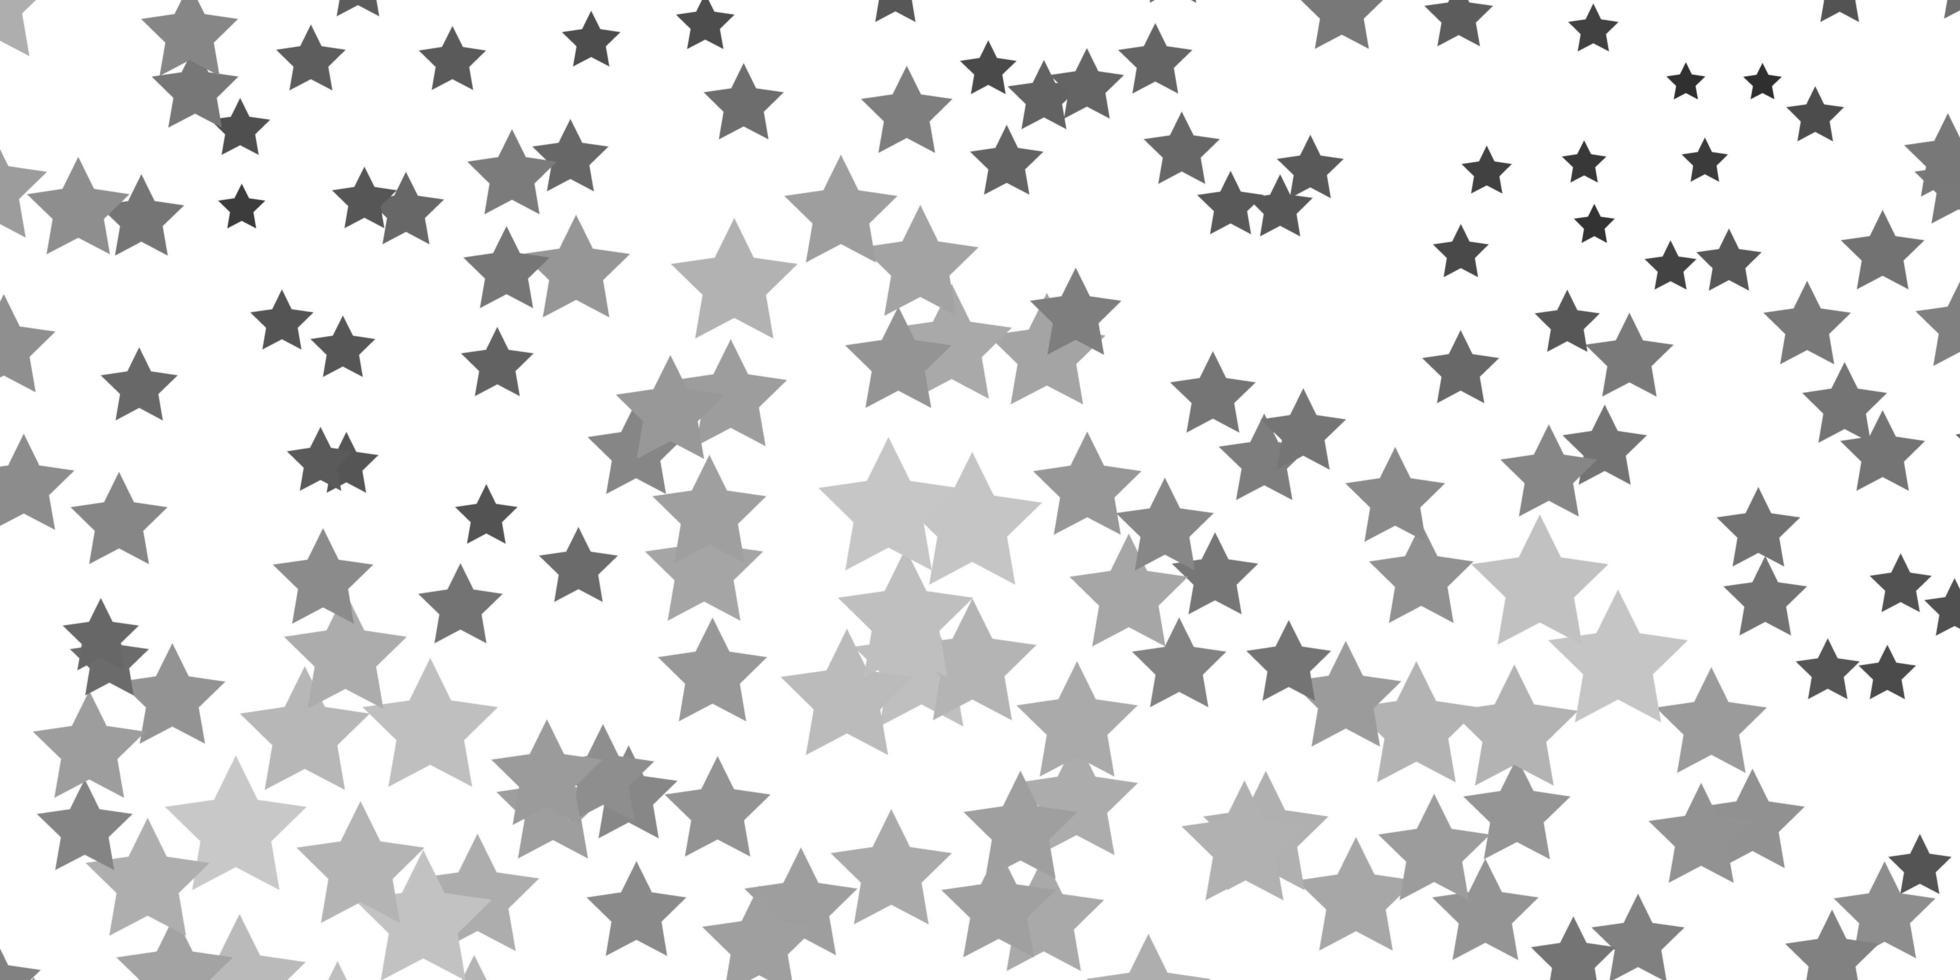 sfondo vettoriale grigio chiaro con stelle piccole e grandi.